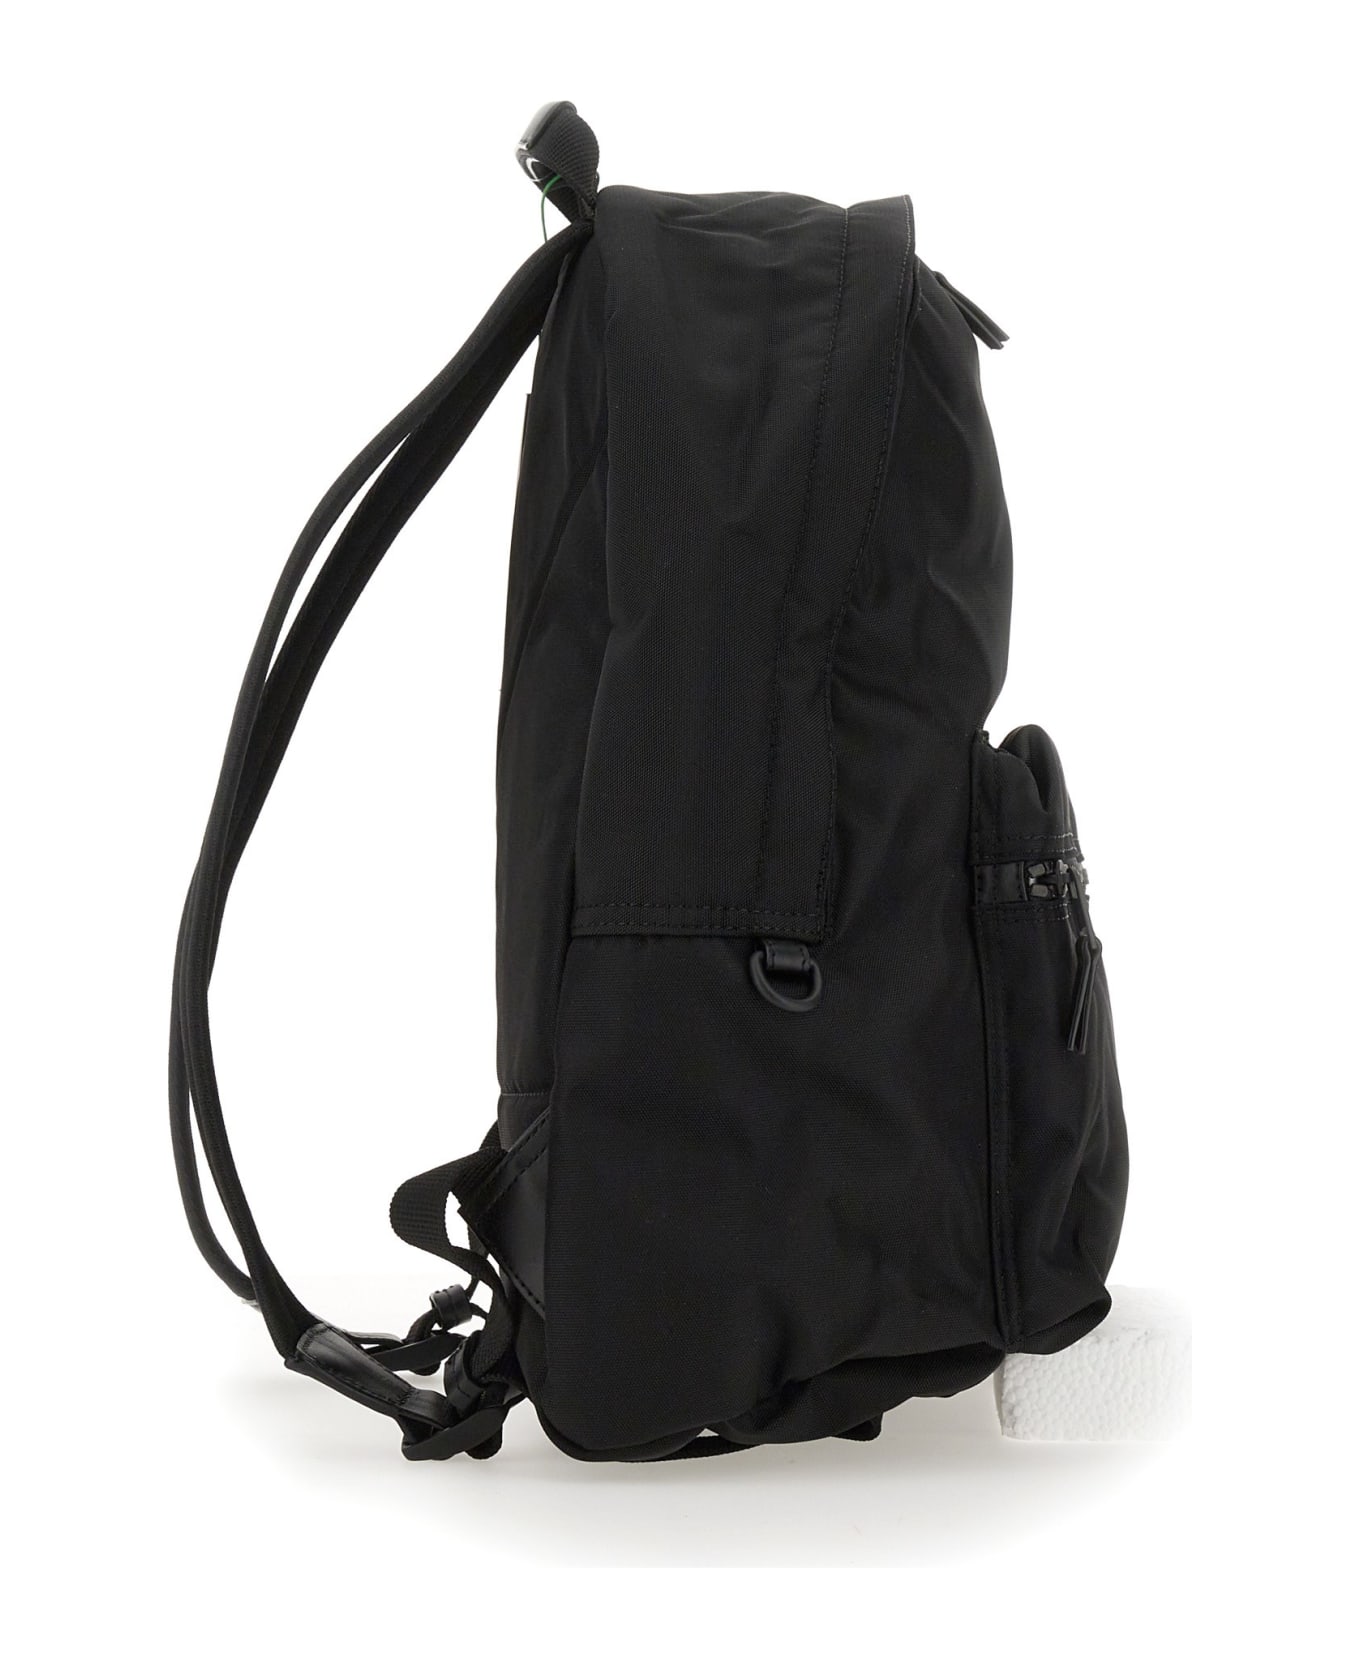 Kenzo Backpack With Logo - NERO